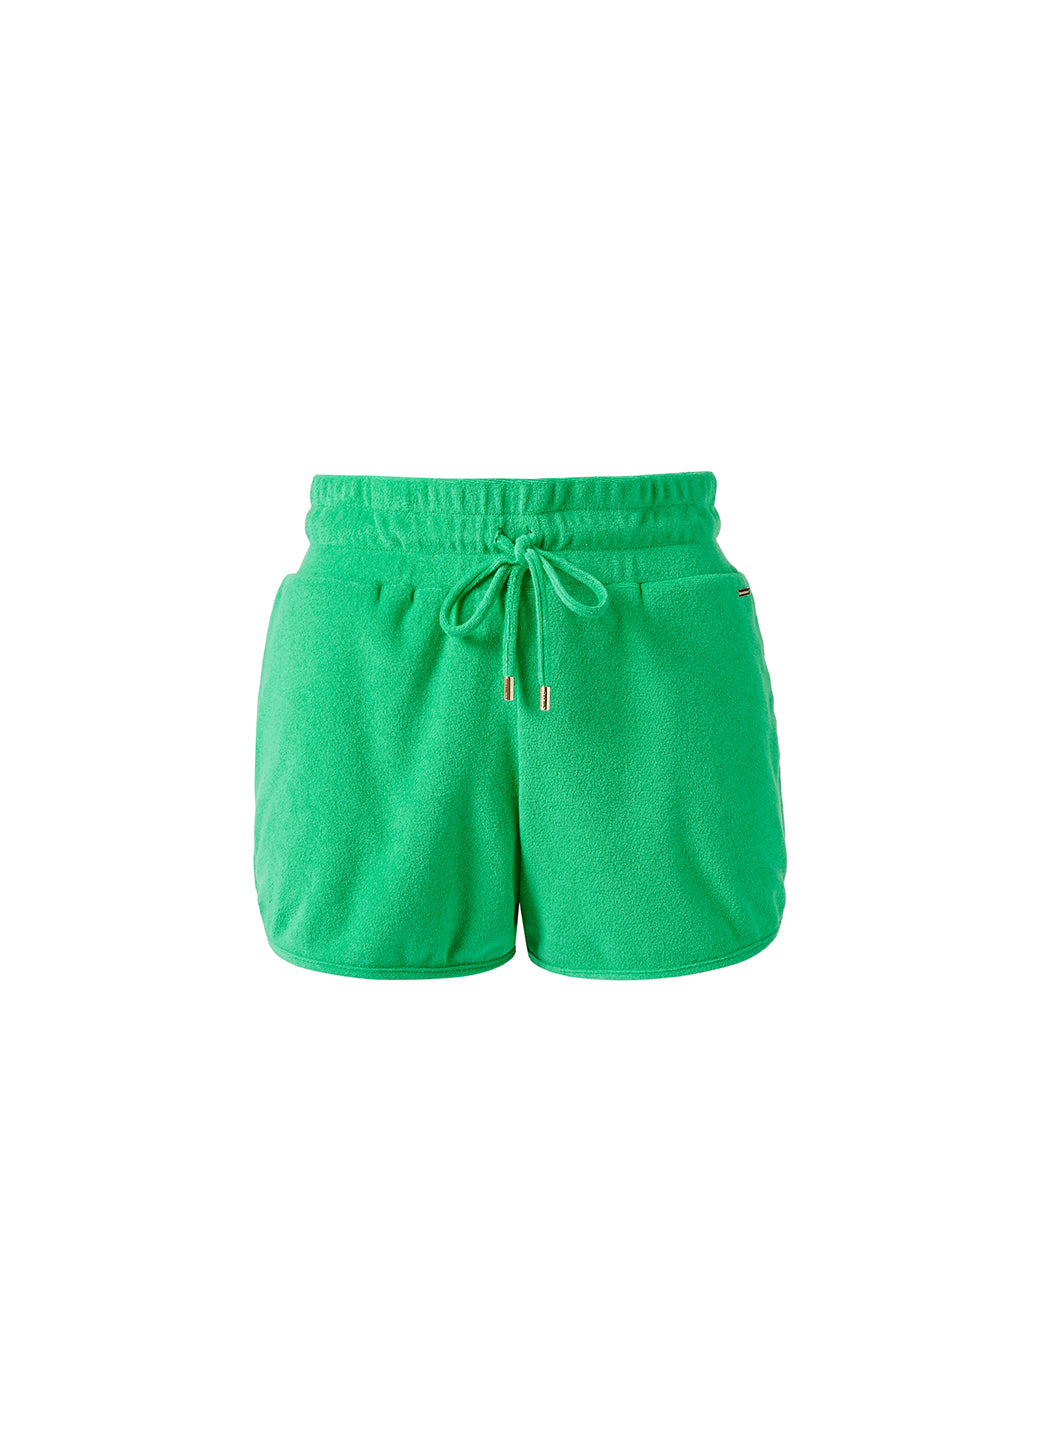 harley-green-shorts_cutouts